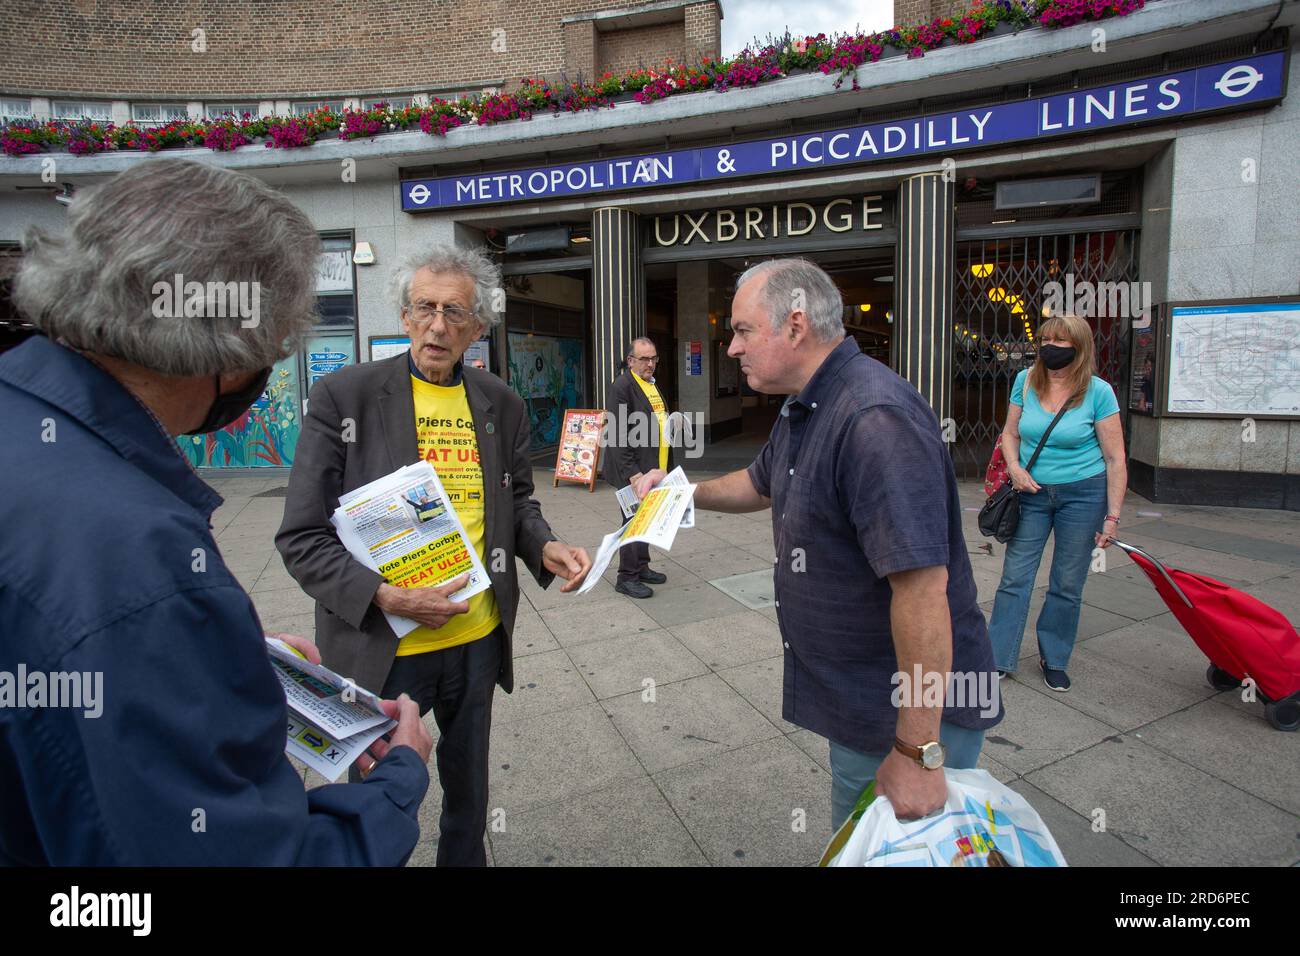 Uxbridge, Großbritannien. 18. Juli 2023. Zwei Tage vor der politischen Nachwahl, Piers Corbyn, ein Nachwahlkandidat für Uxbridge und South Ruislip vor der U-Bahn-Station Uxbridge, am 18. Juli 2023 in London, England. Der Wahlkreis Uxbridge und South Ruislip ist eine von drei lokalen Nachwahlen, die am selben Tag stattfinden, aber Uxbridge war im parlament acht Jahre lang durch den ehemaligen konservativen Premierminister Boris Johnson vertreten, bevor er als Abgeordneter zurücktrat. Am 20. Juli werden 17 Kandidaten dagegen antreten. Kredit: horst friedrichs/Alamy Live News Stockfoto